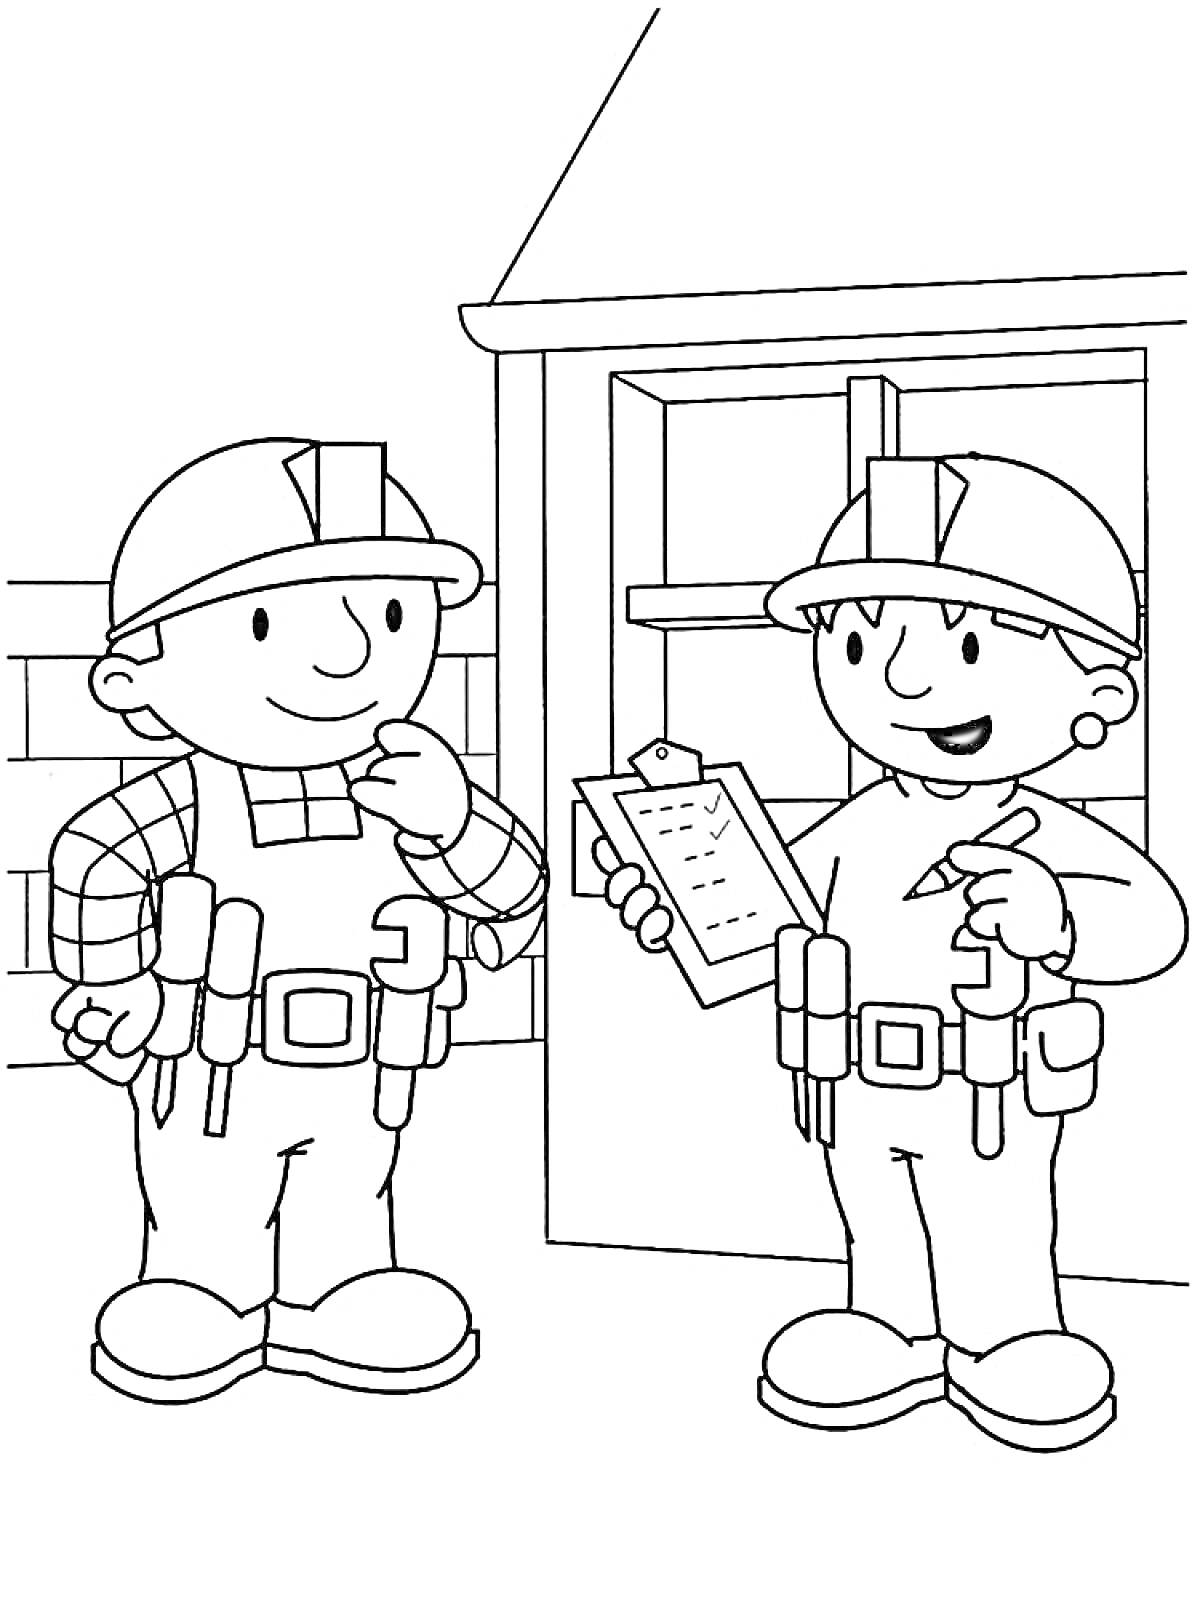  Боб-строитель и напарник проверяют список заданий у дома